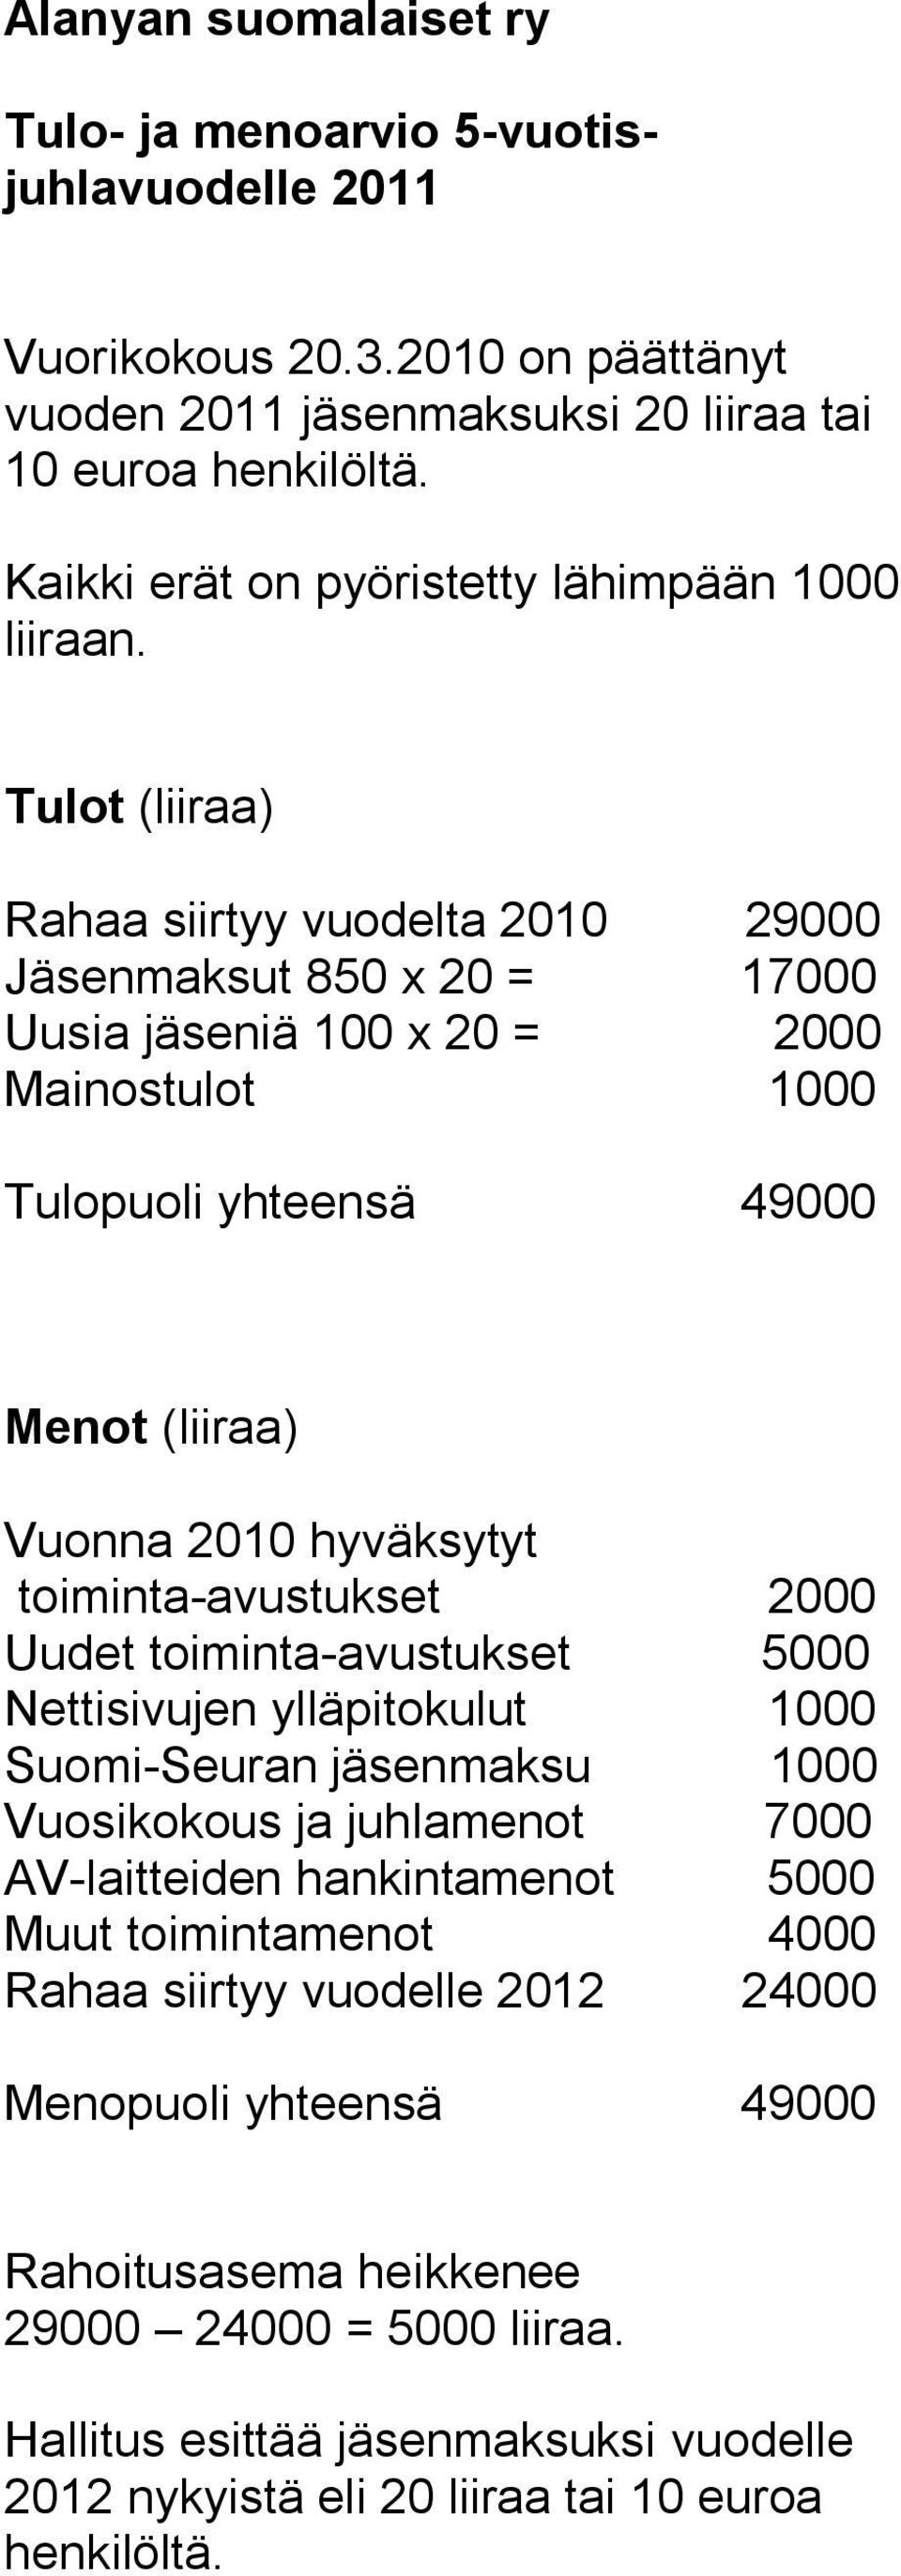 Tulot (liiraa) Rahaa siirtyy vuodelta 2010 29000 Jäsenmaksut 850 x 20 = 17000 Uusia jäseniä 100 x 20 = 2000 Mainostulot 1000 Tulopuoli yhteensä 49000 Menot (liiraa) Vuonna 2010 hyväksytyt